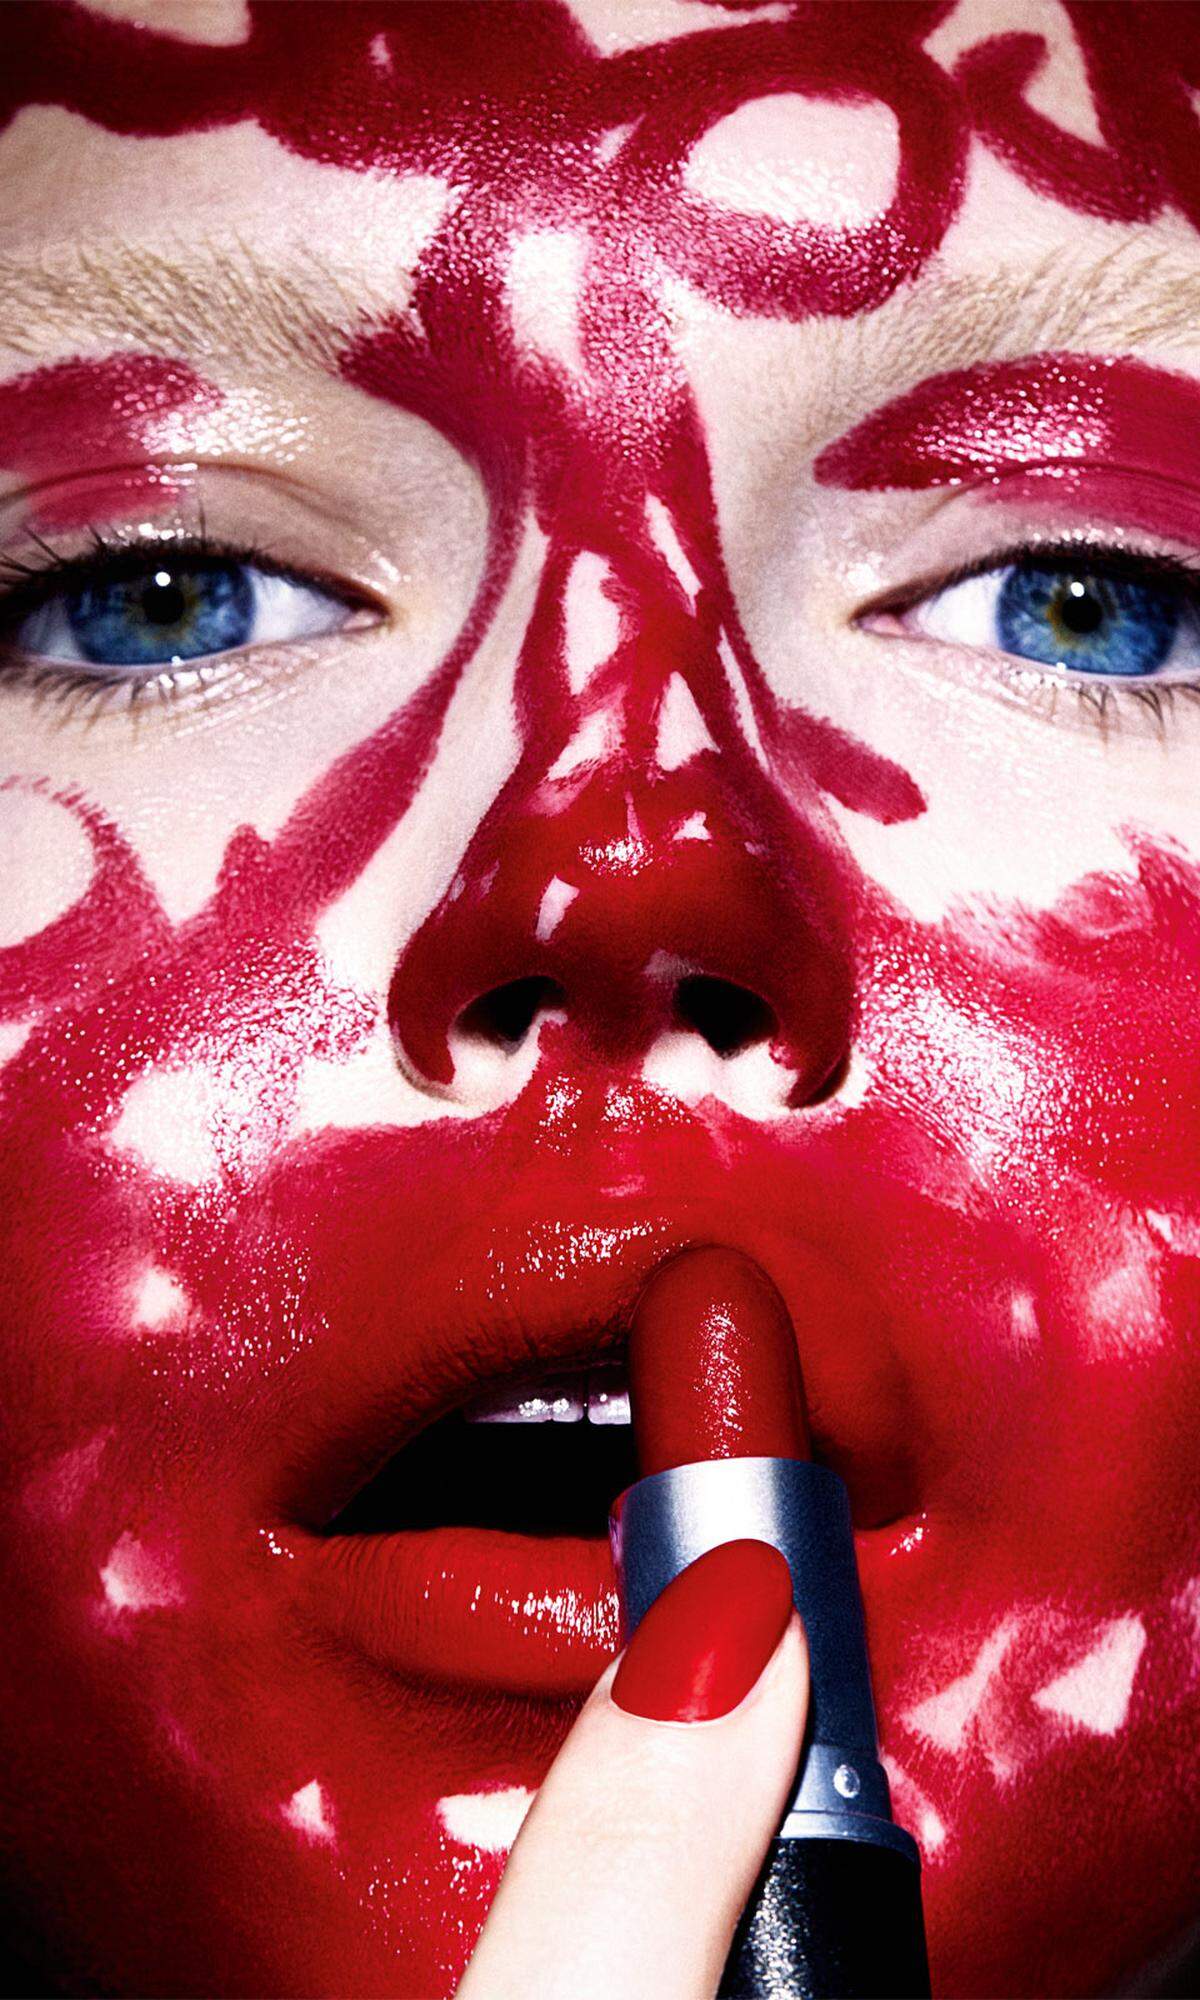 Beinah wie lackiert wirkendes Rot ist nicht erst seit Kylie Jenner angesagt. Glänzend rote Lippen sind nach wie vor der Höhepunkt eines verführerischen Looks.